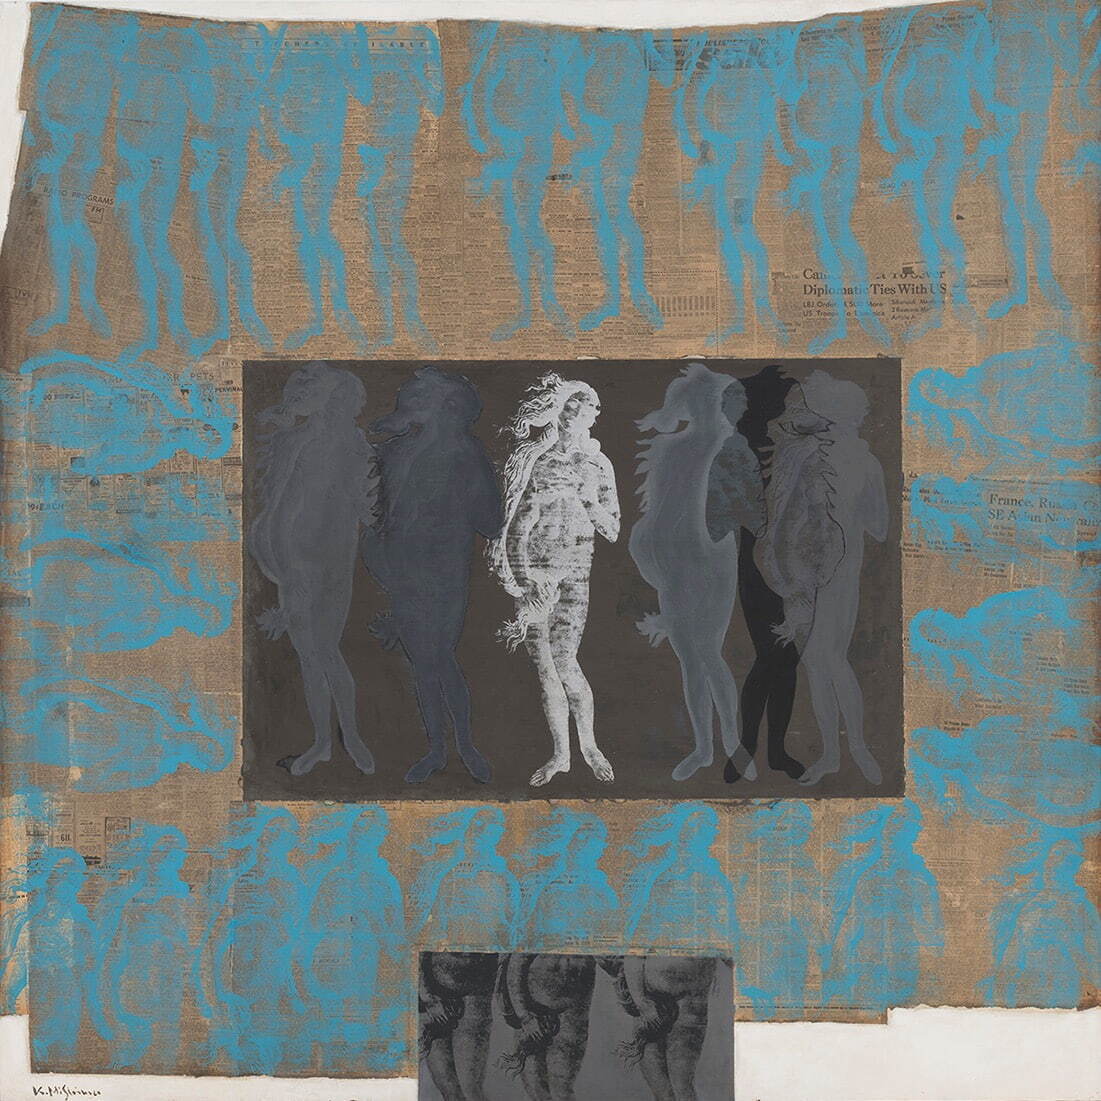 三島喜美代 《ヴィーナスの変貌V》 1967年
アクリル絵具、コラージュ、シルクスクリーン、合板 個人蔵